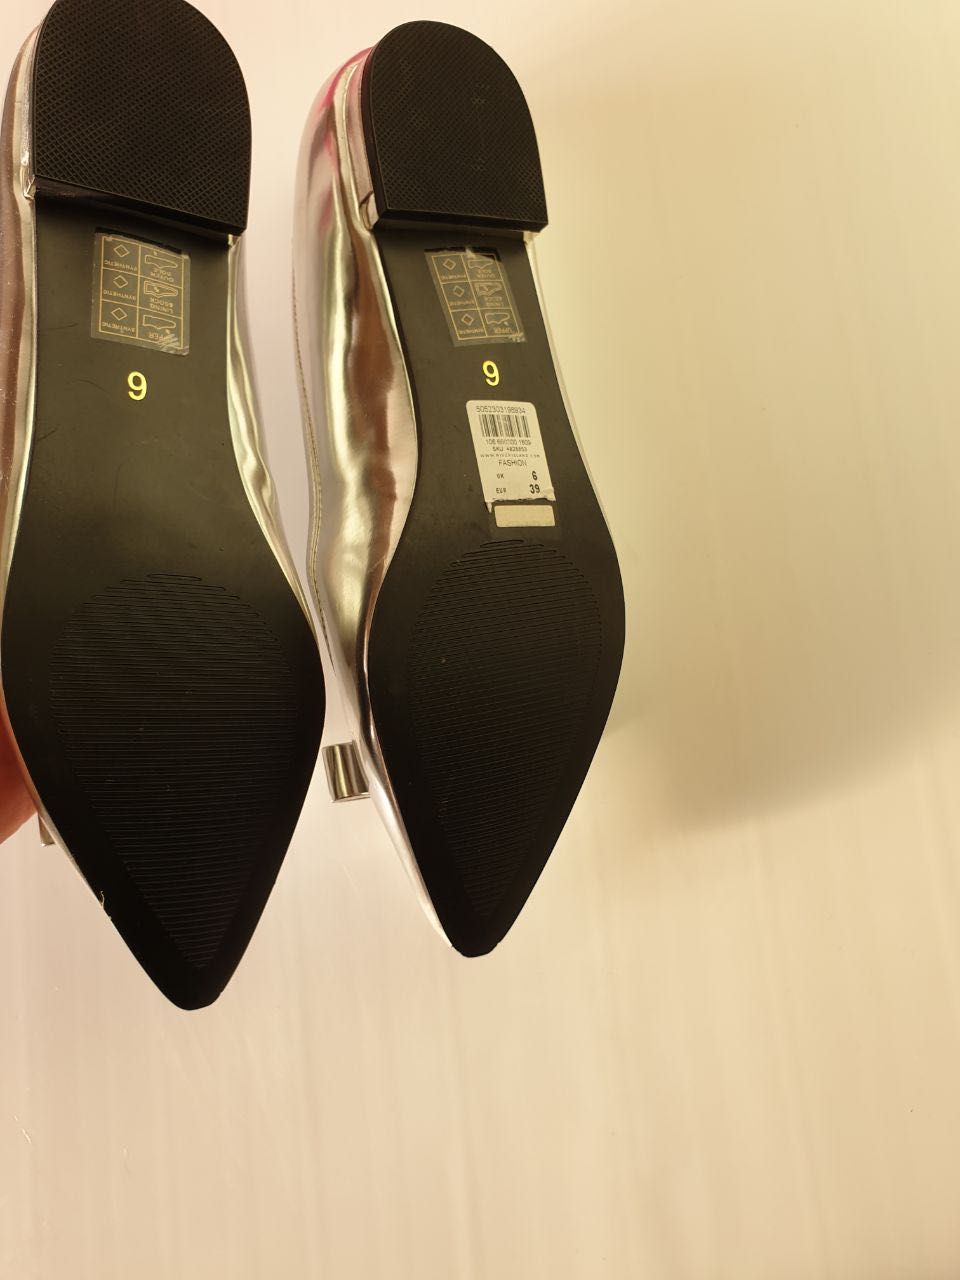 Обувь новая известного английского бренда River Island, makasina yangi